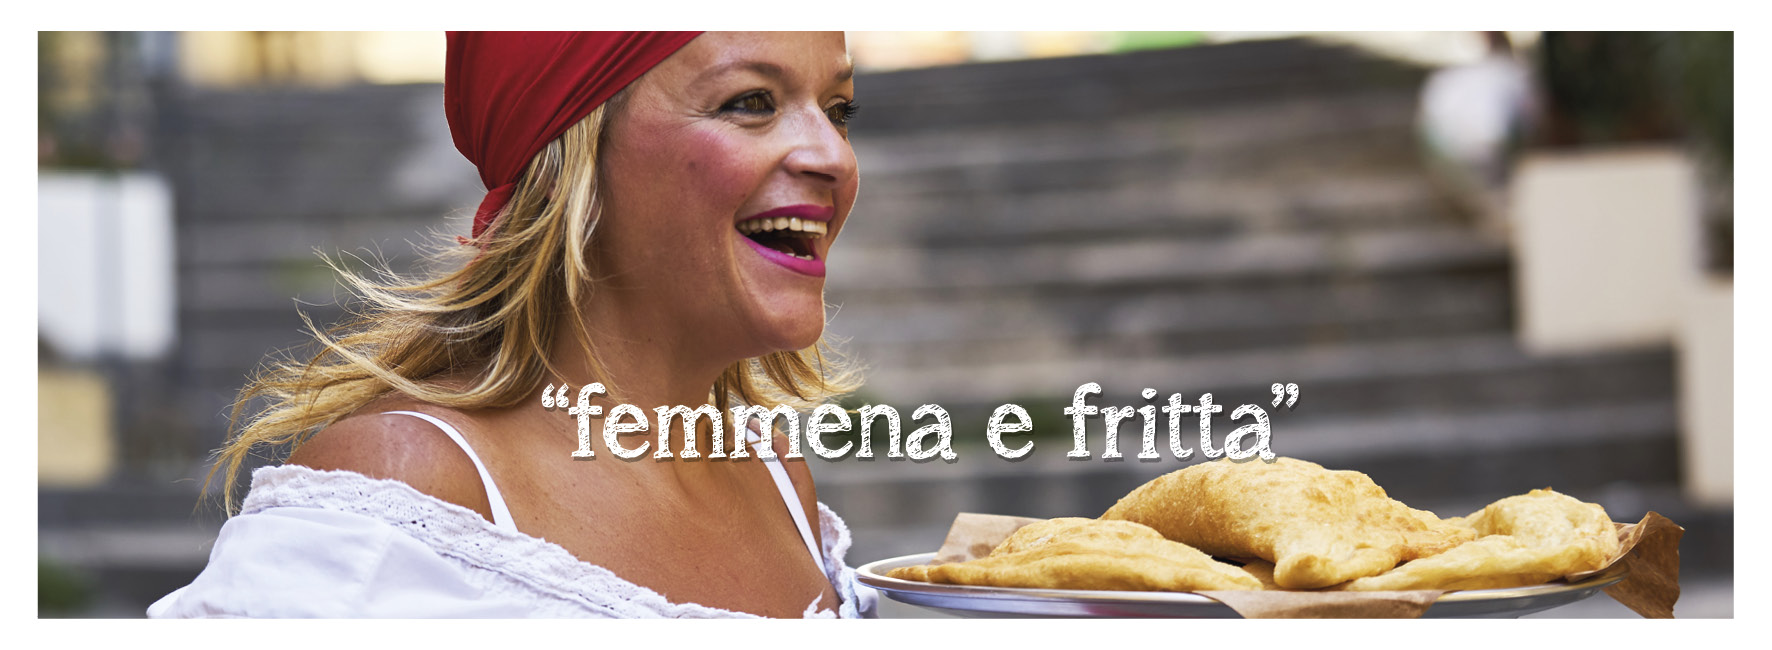 femmena-e-fritta-teresa-iorio-pizza